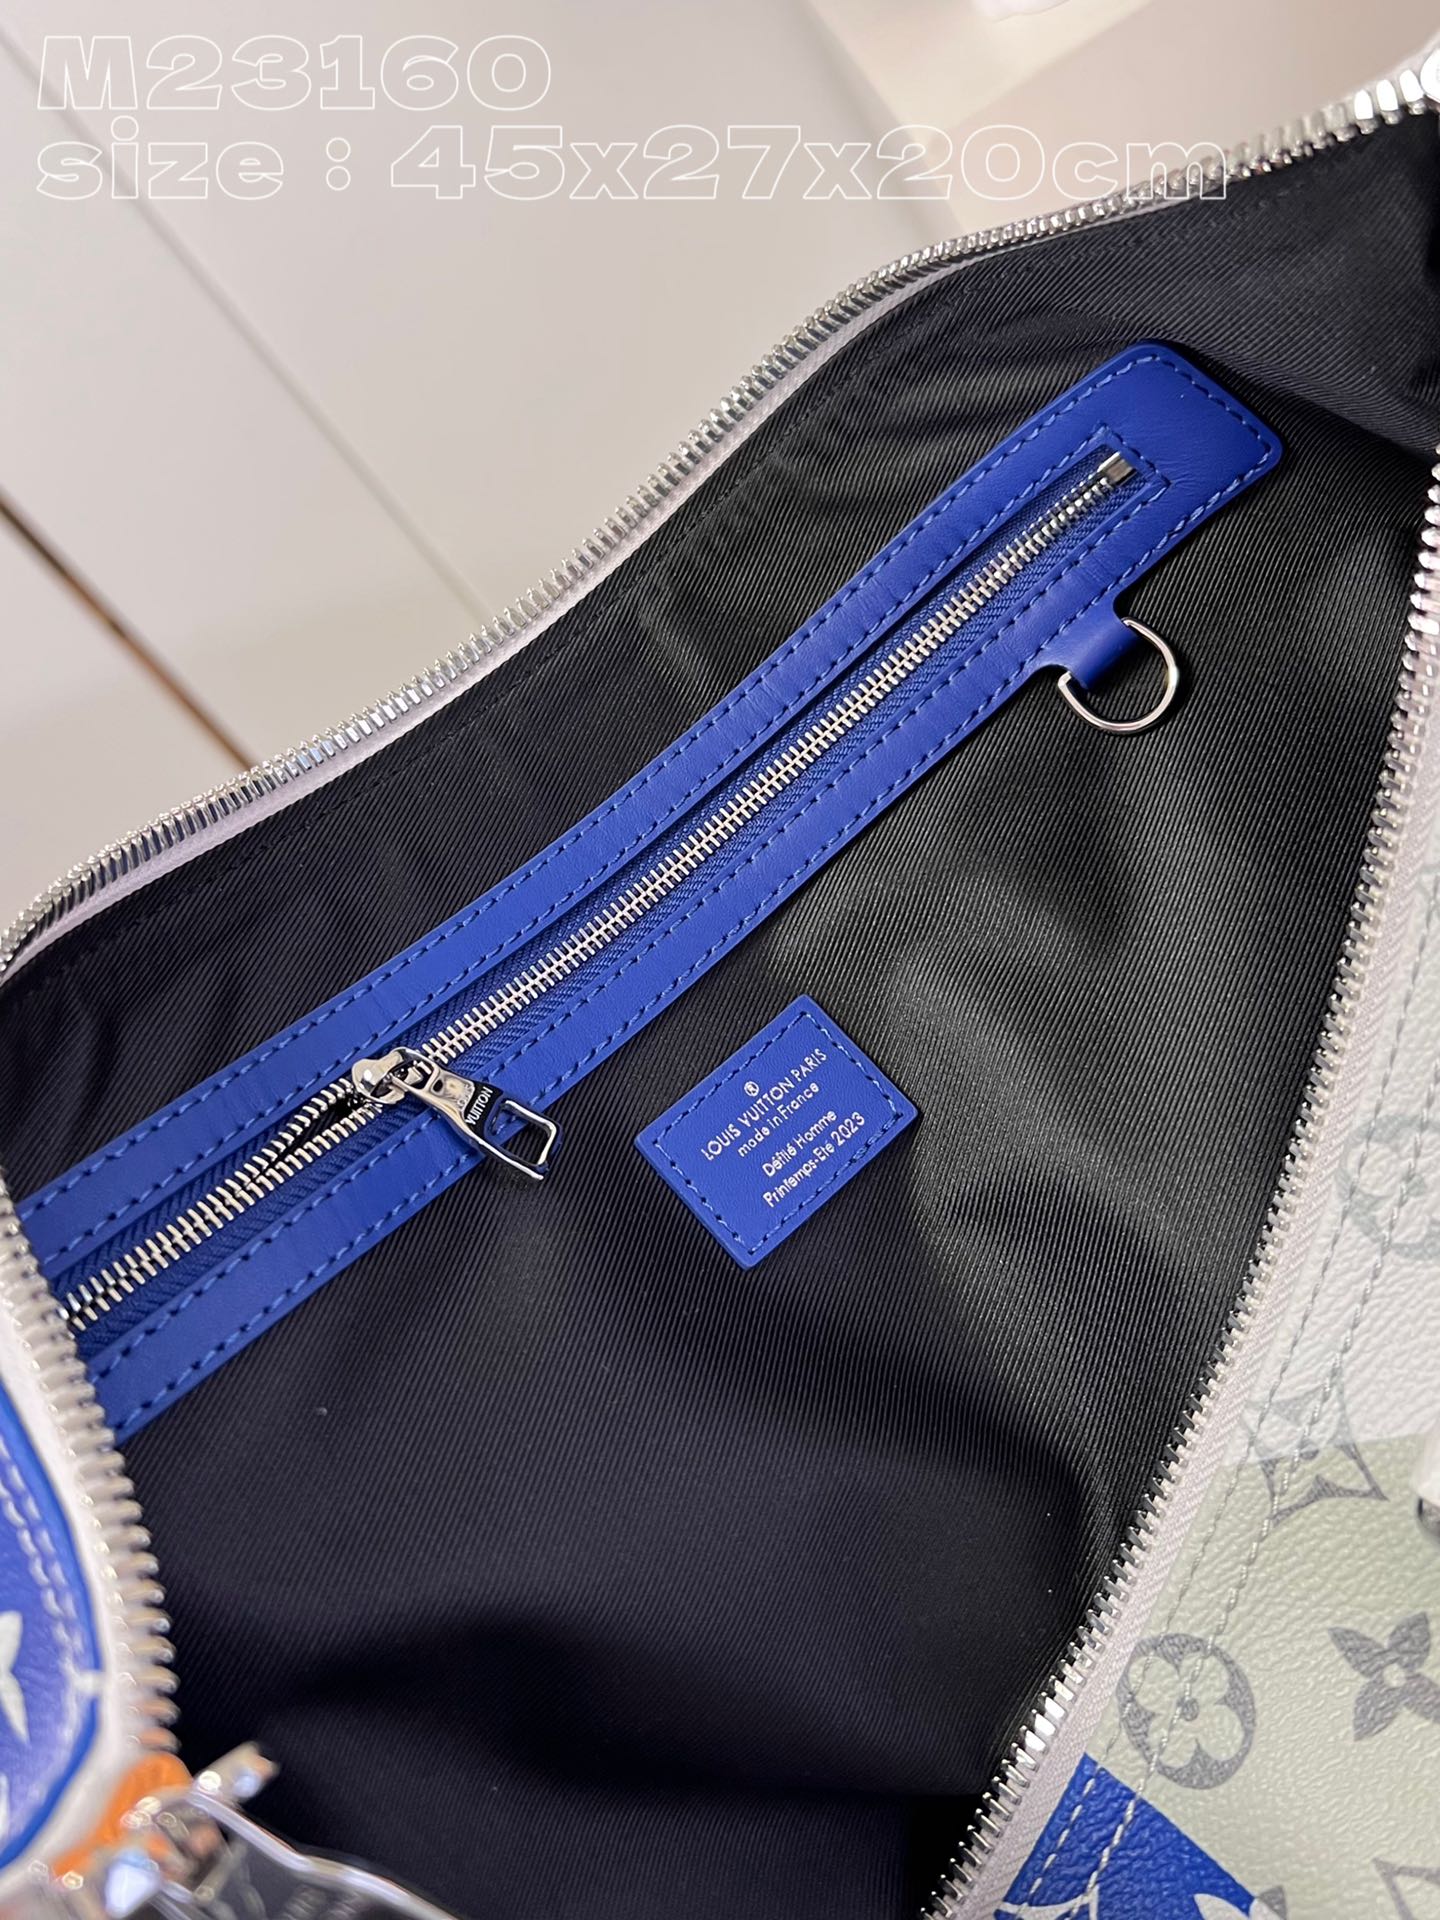 顶级原单M23160白花本款KeepallBandoulière45旅行袋融合Monogram涂层帆布和